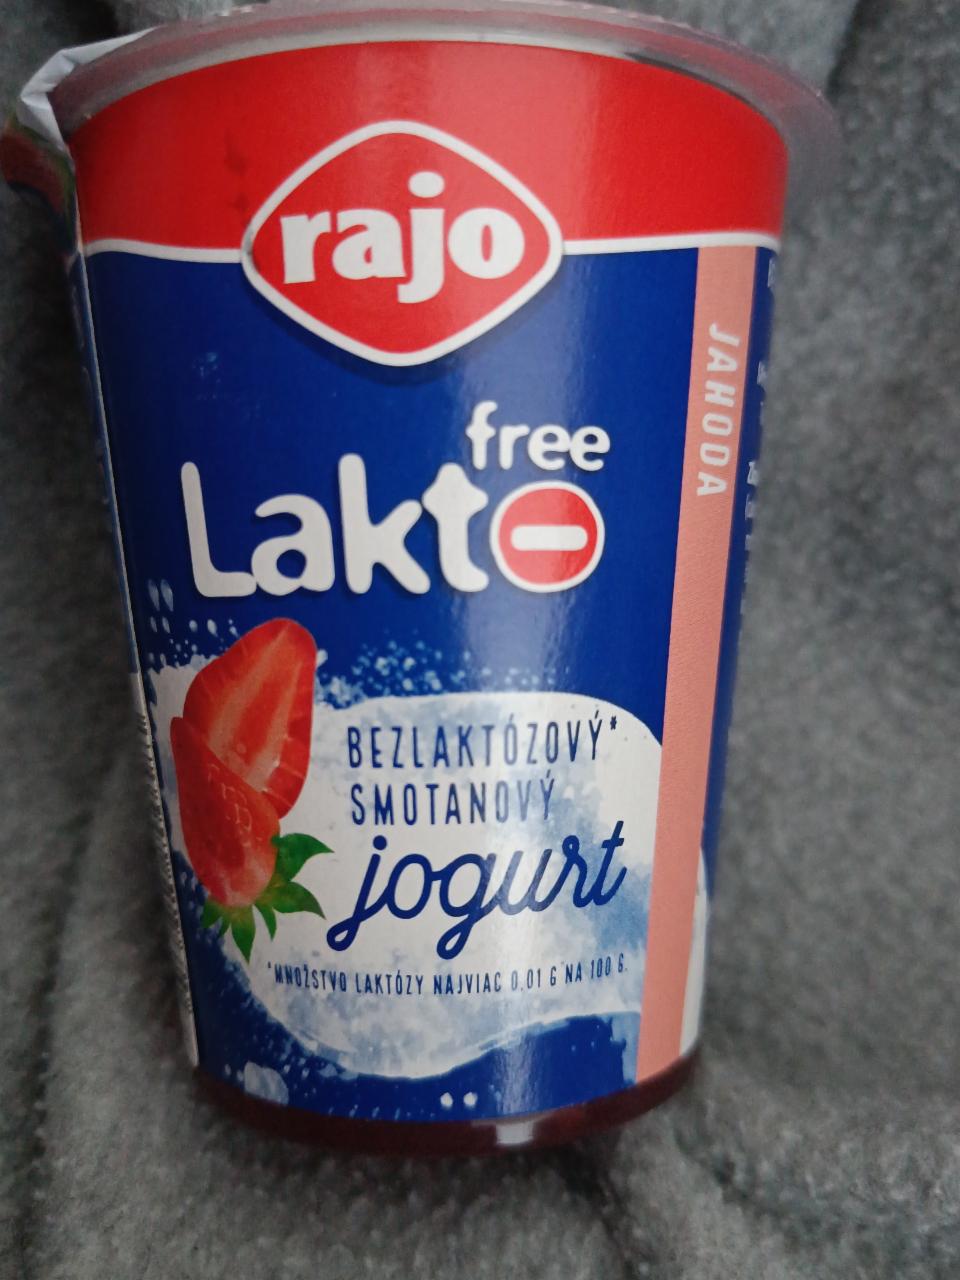 Fotografie - Lakto free jogurt jahoda Rajo